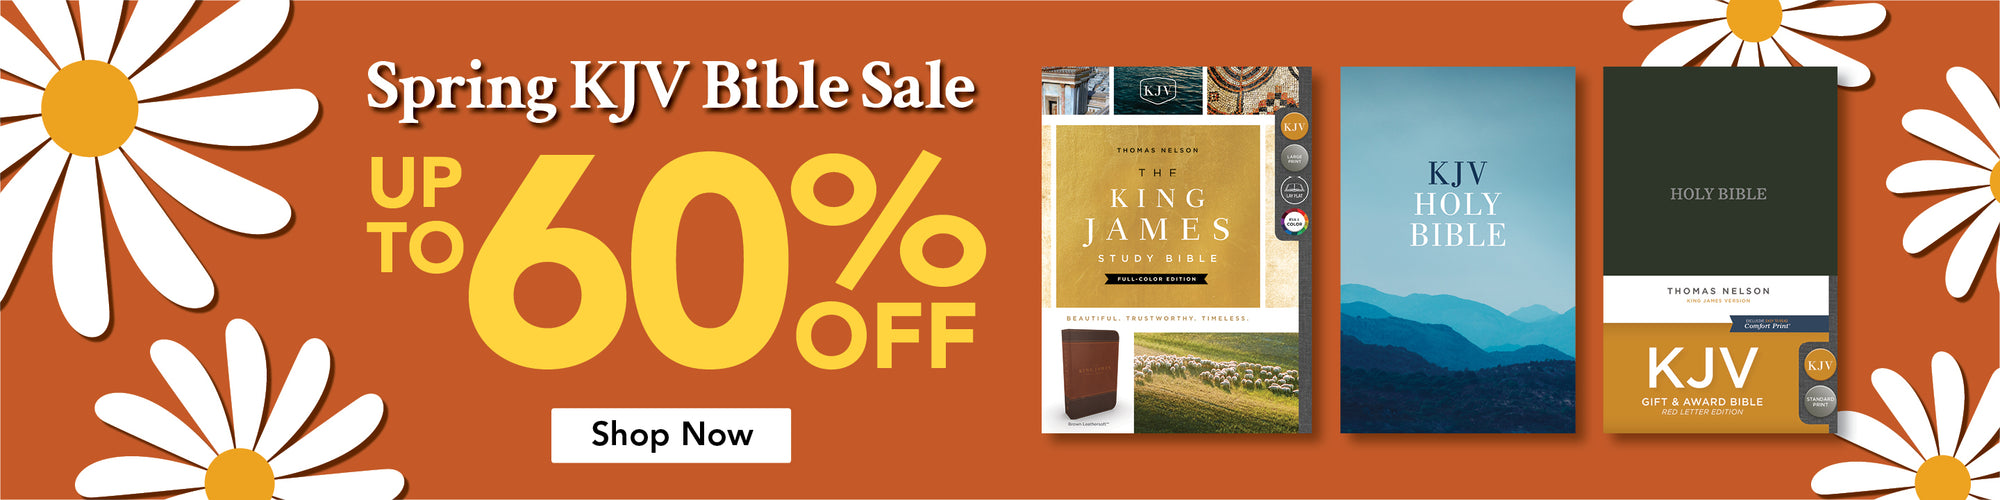 Spring KJV Bible Sale Up to 60% Off